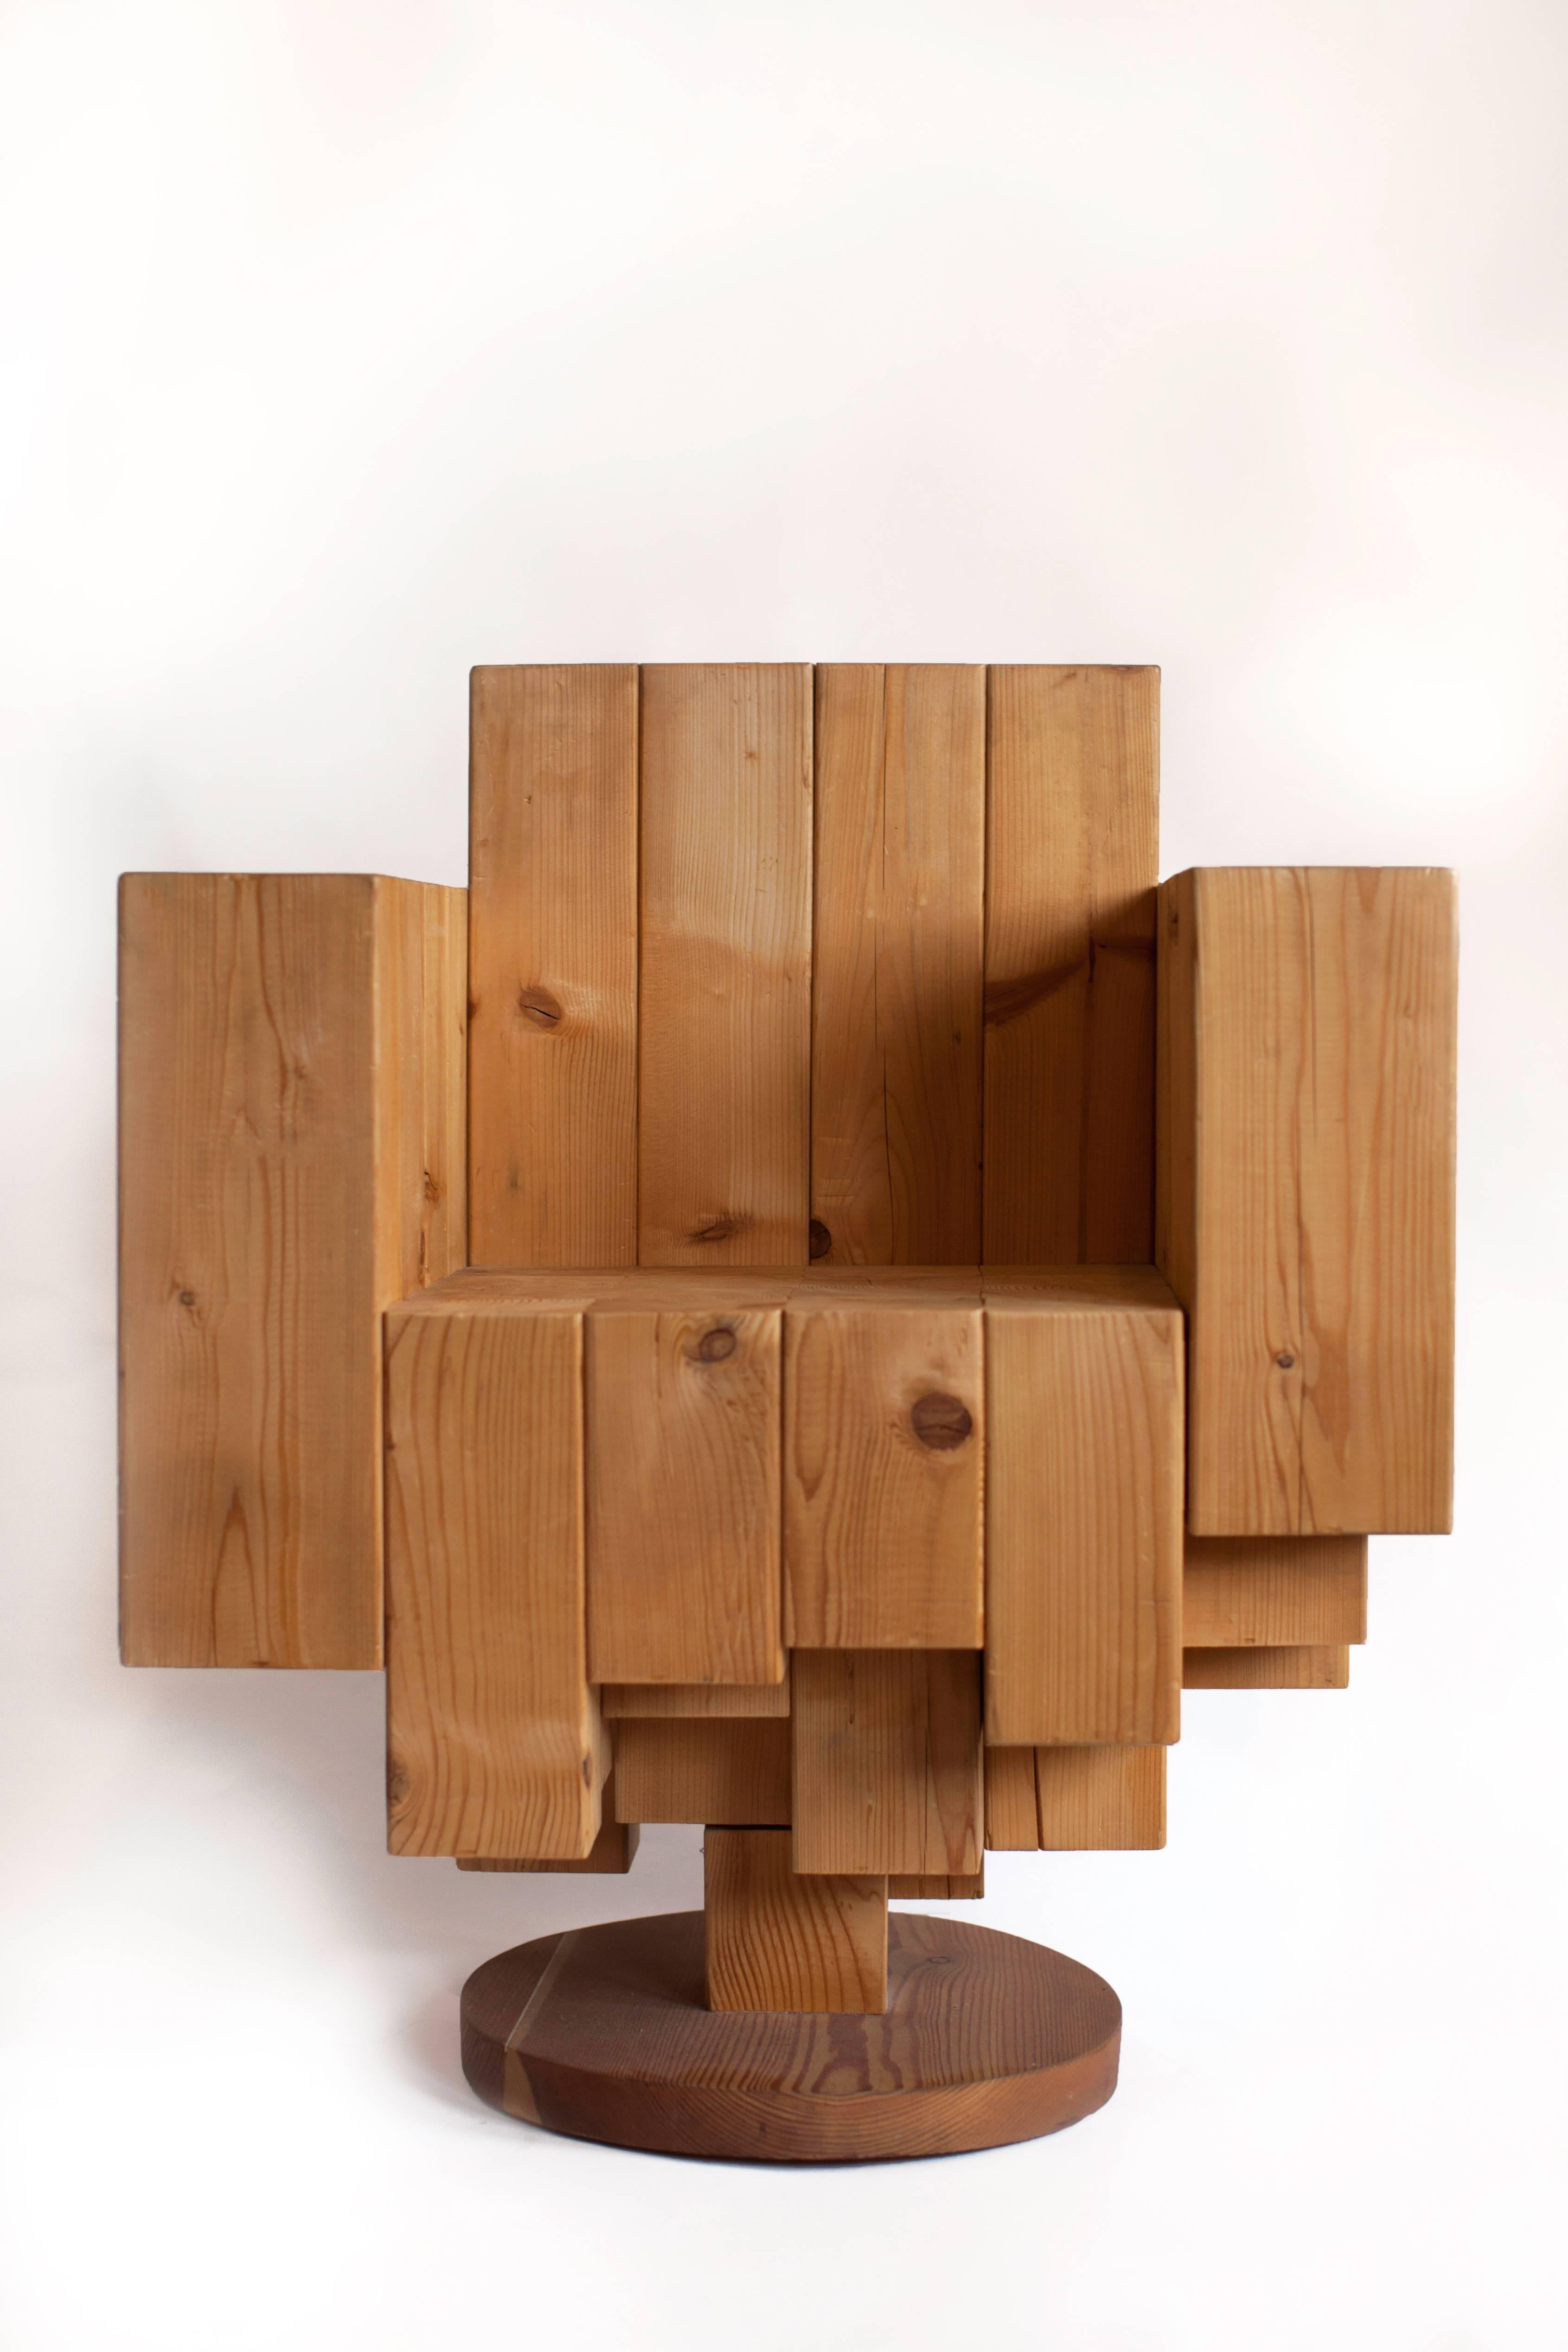 Giorgio Mariani (né en 1966)

Magnifique fauteuil cubiste sculptural en blocs massifs et asymétriques de pin avec des motifs circulaires contrastés de grain de bois au niveau de l'assise. Cette pièce étonnante et unique de l'ébéniste Giorgio Mariani